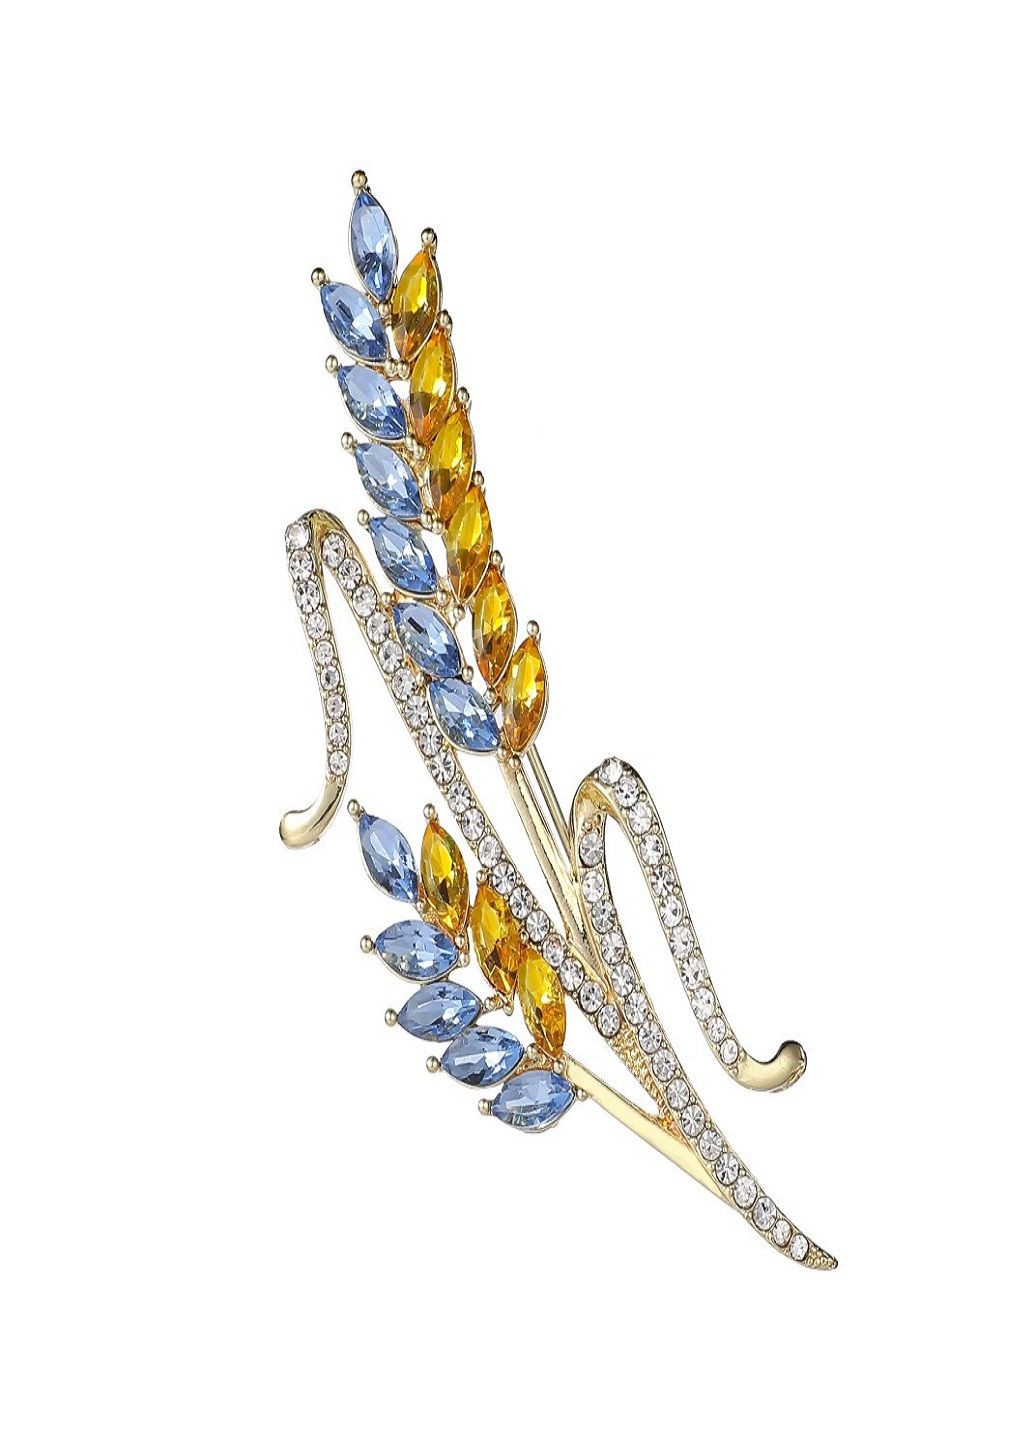 Золотистая патриотическая двойная брошь Колосья пшеницы с кристаллами символ Украины желто голубая Fashion Jewelry (292144537)